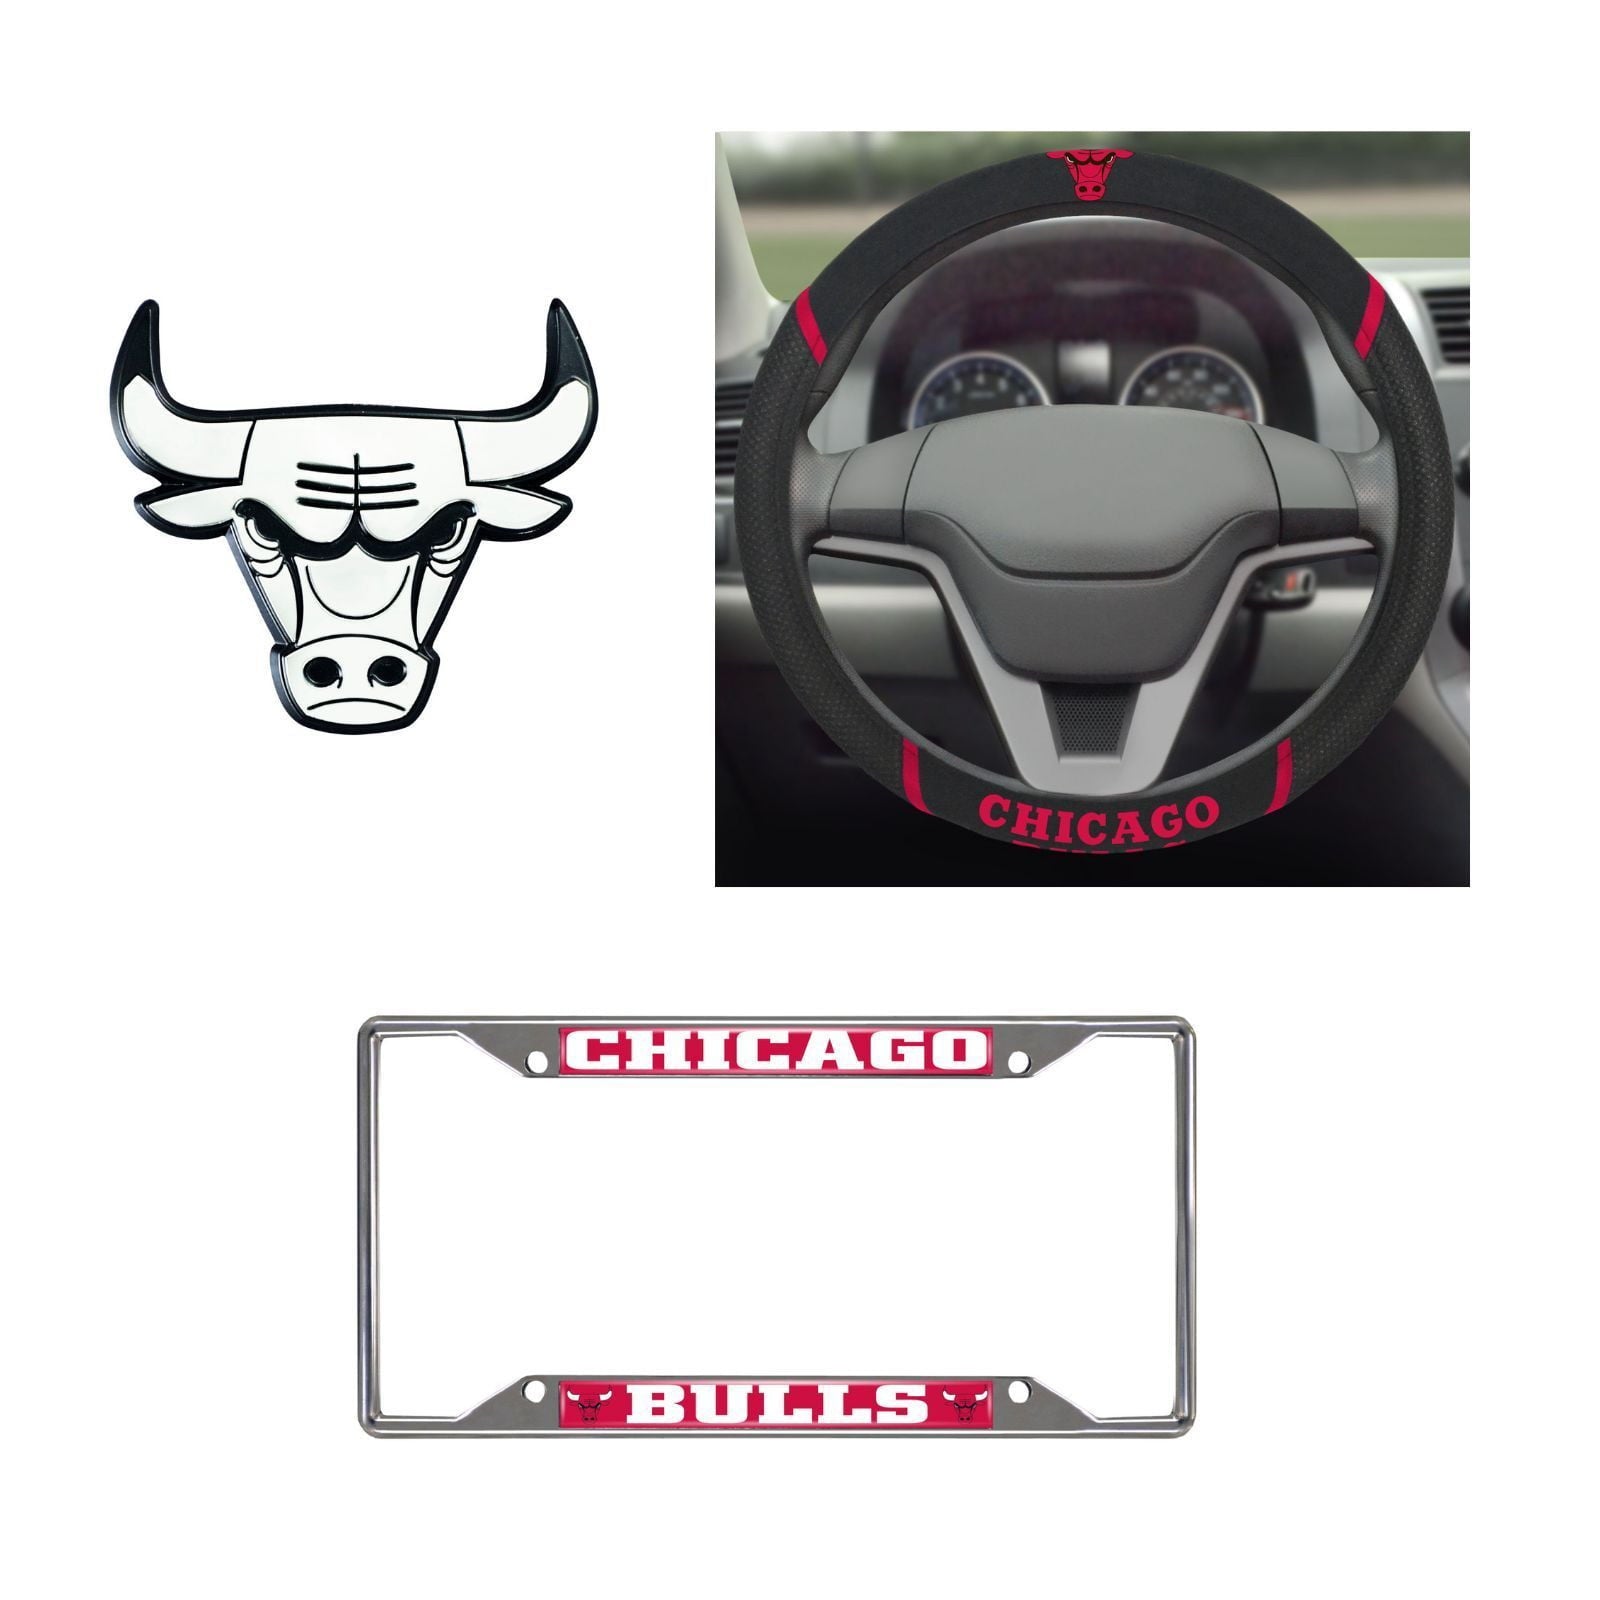 Chicago Bulls Steering Wheel Cover, License Plate Frame, 3D Chrome Emblem